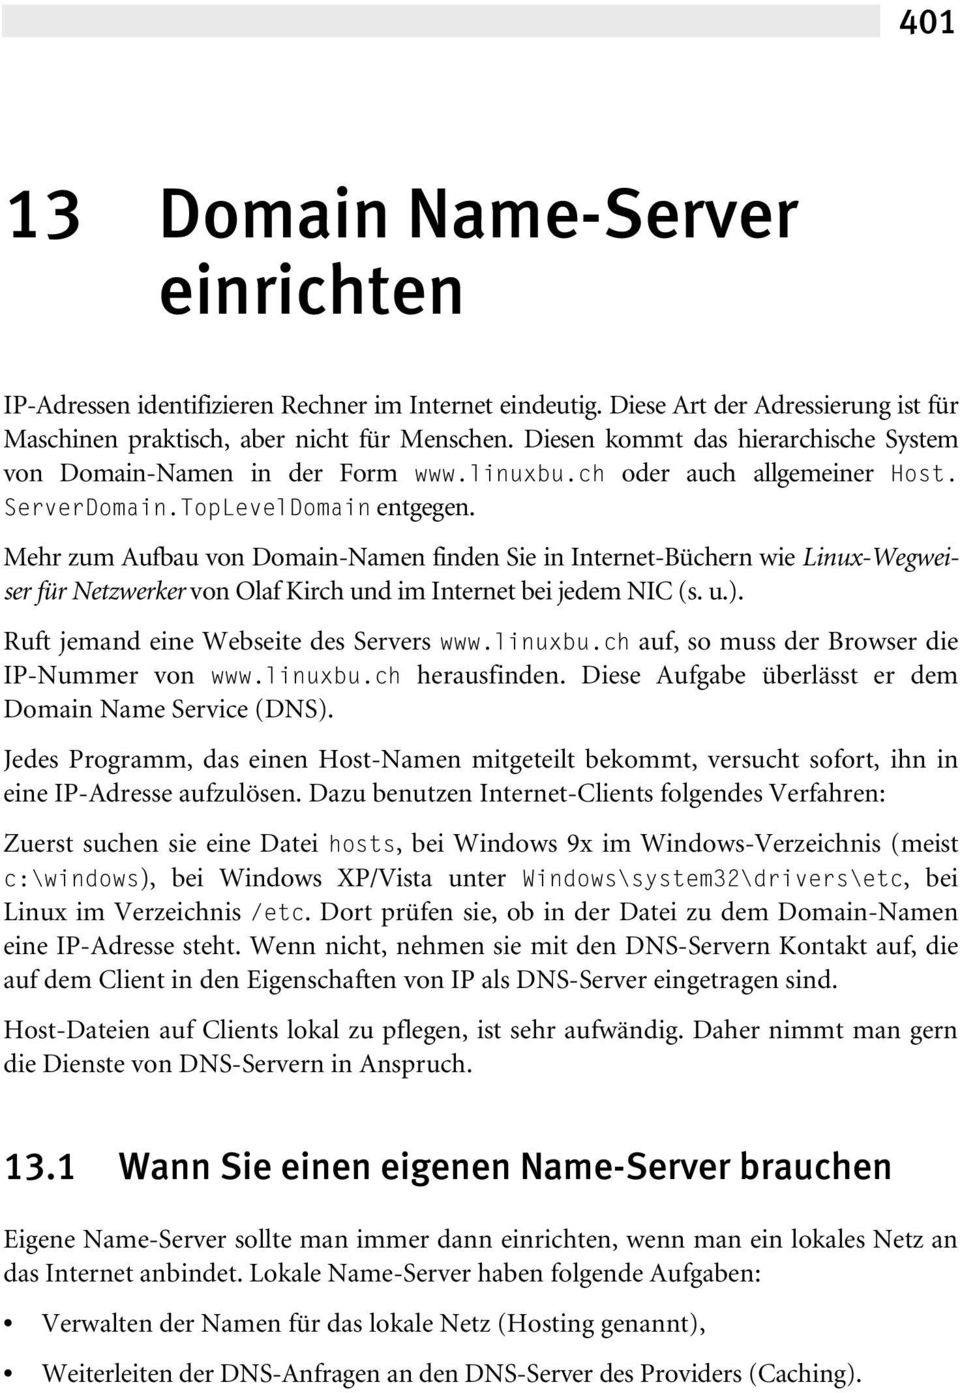 Mehr zum Aufbau von Domain-Namen finden Sie in Internet-Büchern wie Linux-Wegweiser für Netzwerker von Olaf Kirch und im Internet bei jedem NIC (s. u.). Ruft jemand eine Webseite des Servers www.